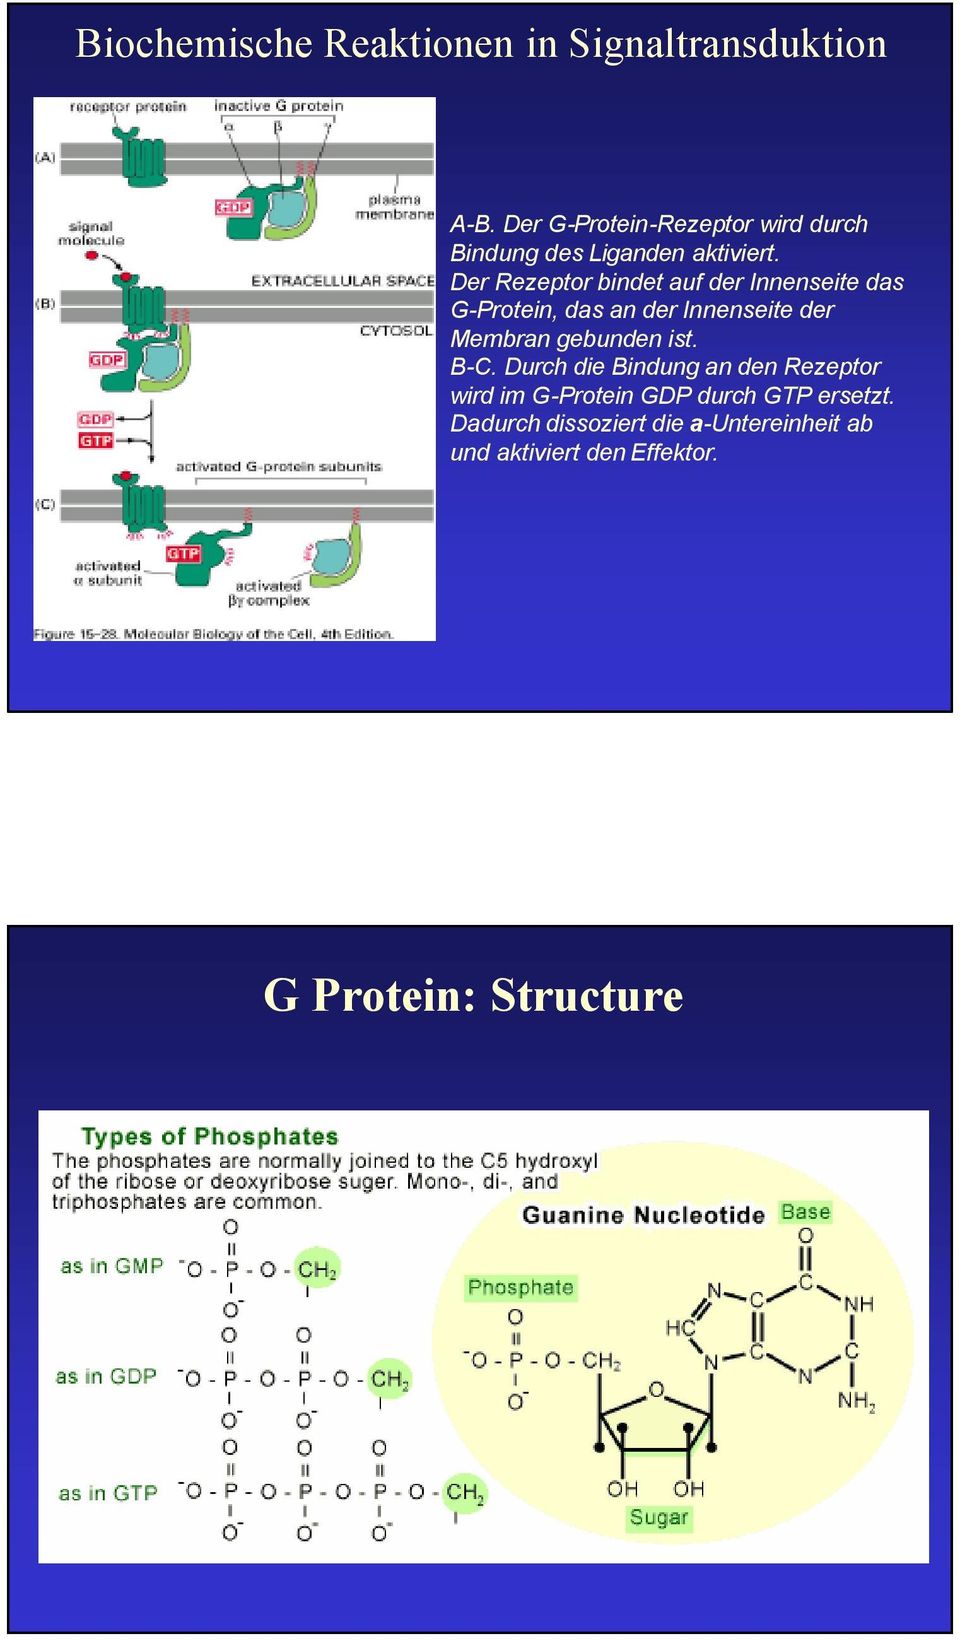 Der Rezeptor bindet auf der Innenseite das G-Protein, das an der Innenseite der Membran gebunden